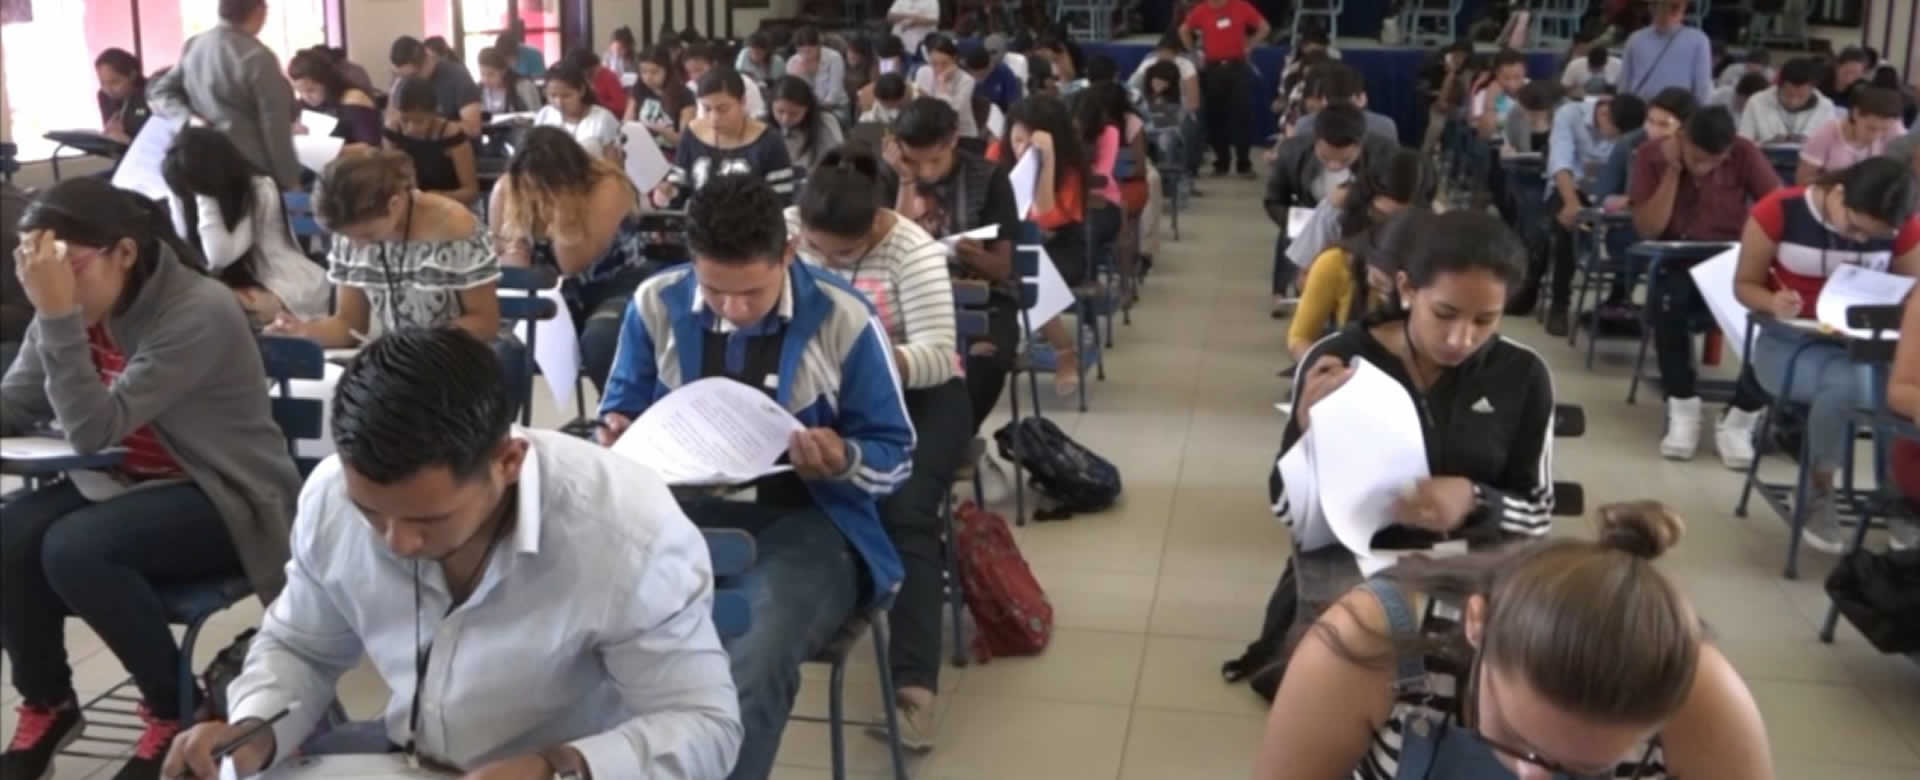 Bachilleres llegan desde temprano a la UNAN-FAREM Estelí para realizar examen de admisión